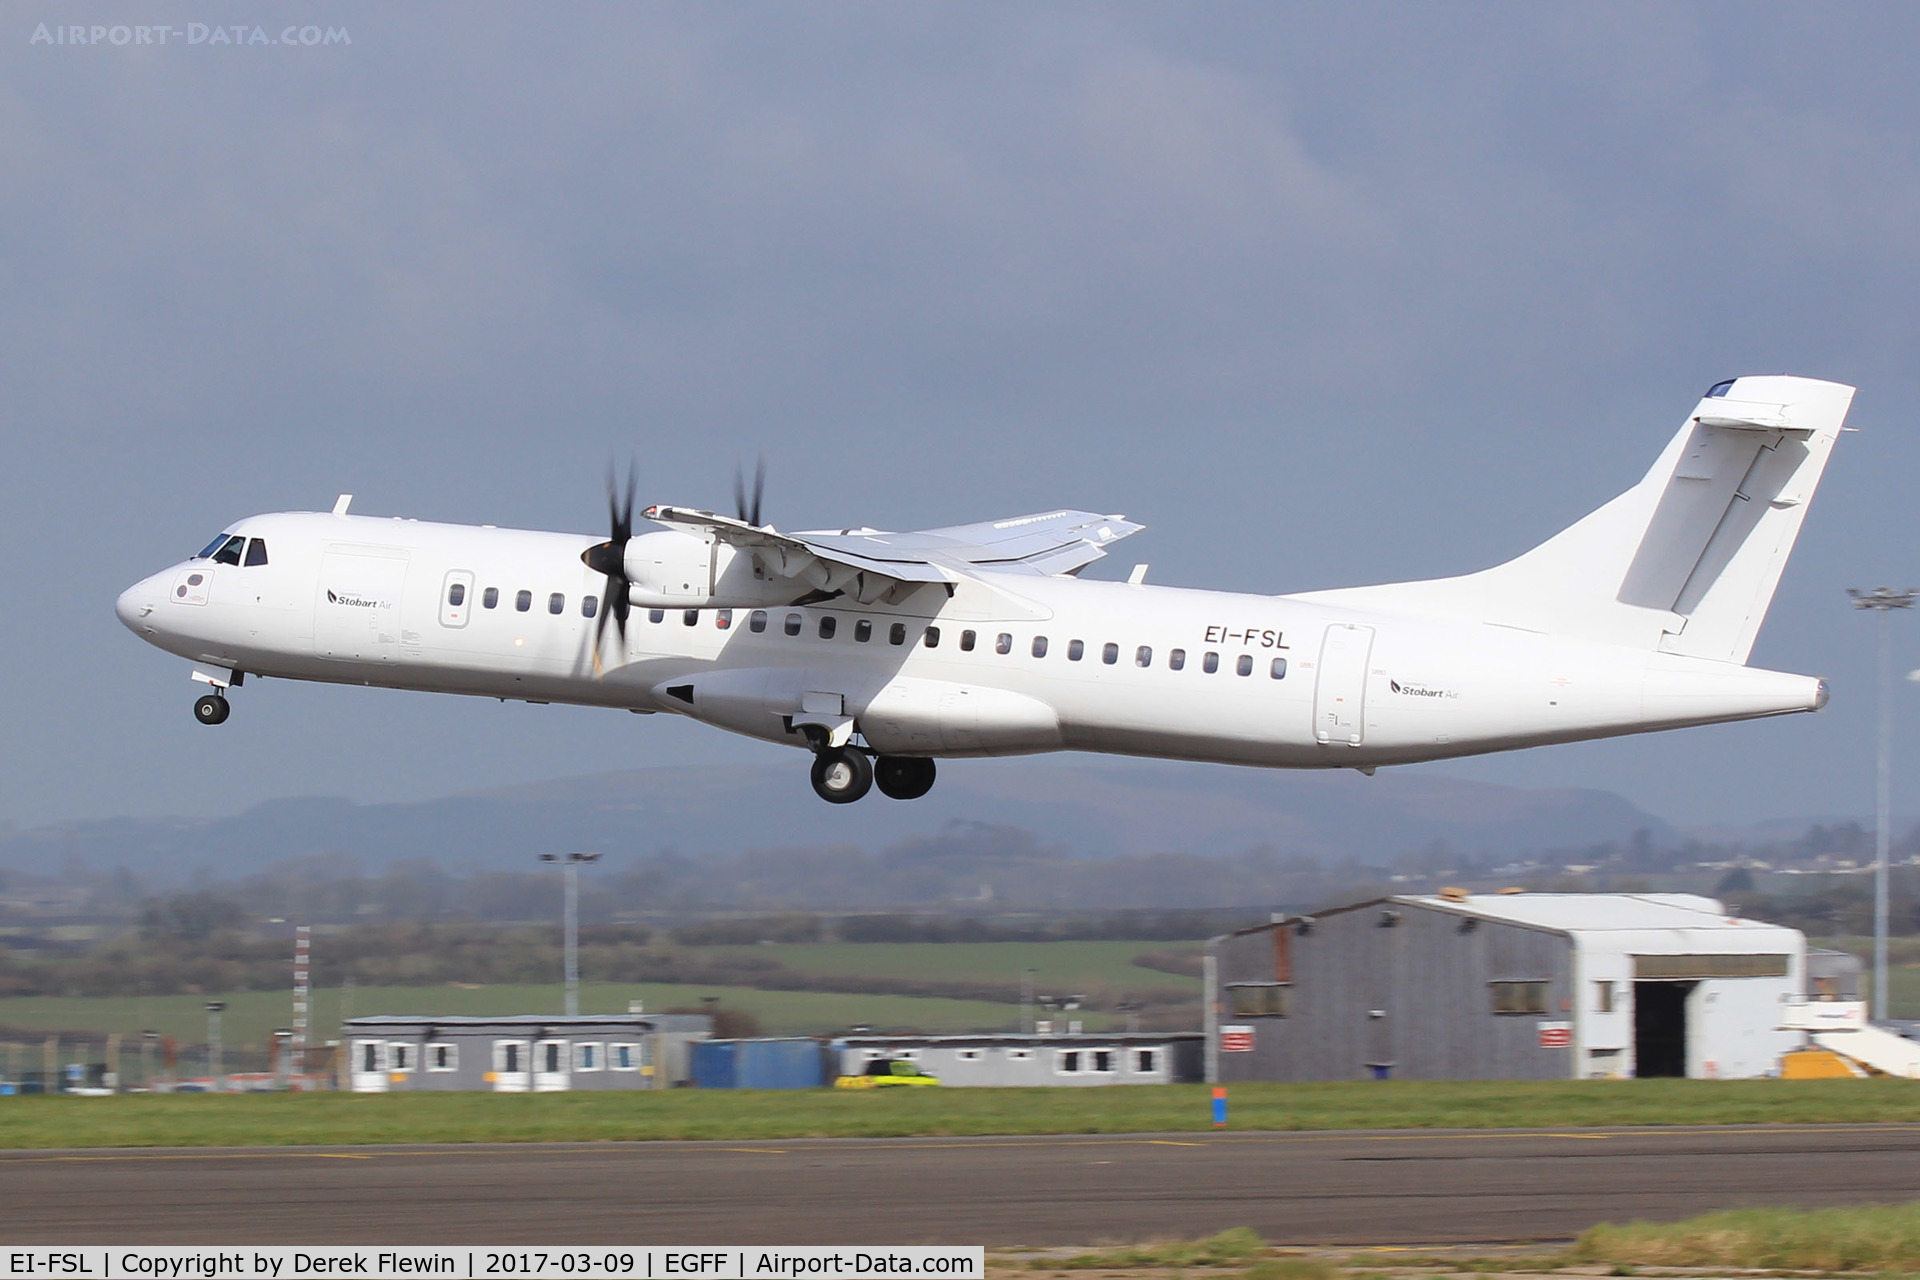 EI-FSL, 2016 ATR 72-212A C/N 1339, ATR 72-212A, Aer Lingus Regional Dublin Based, call sign Stobart 93CW,departing runway 30 en-route to Dublin.